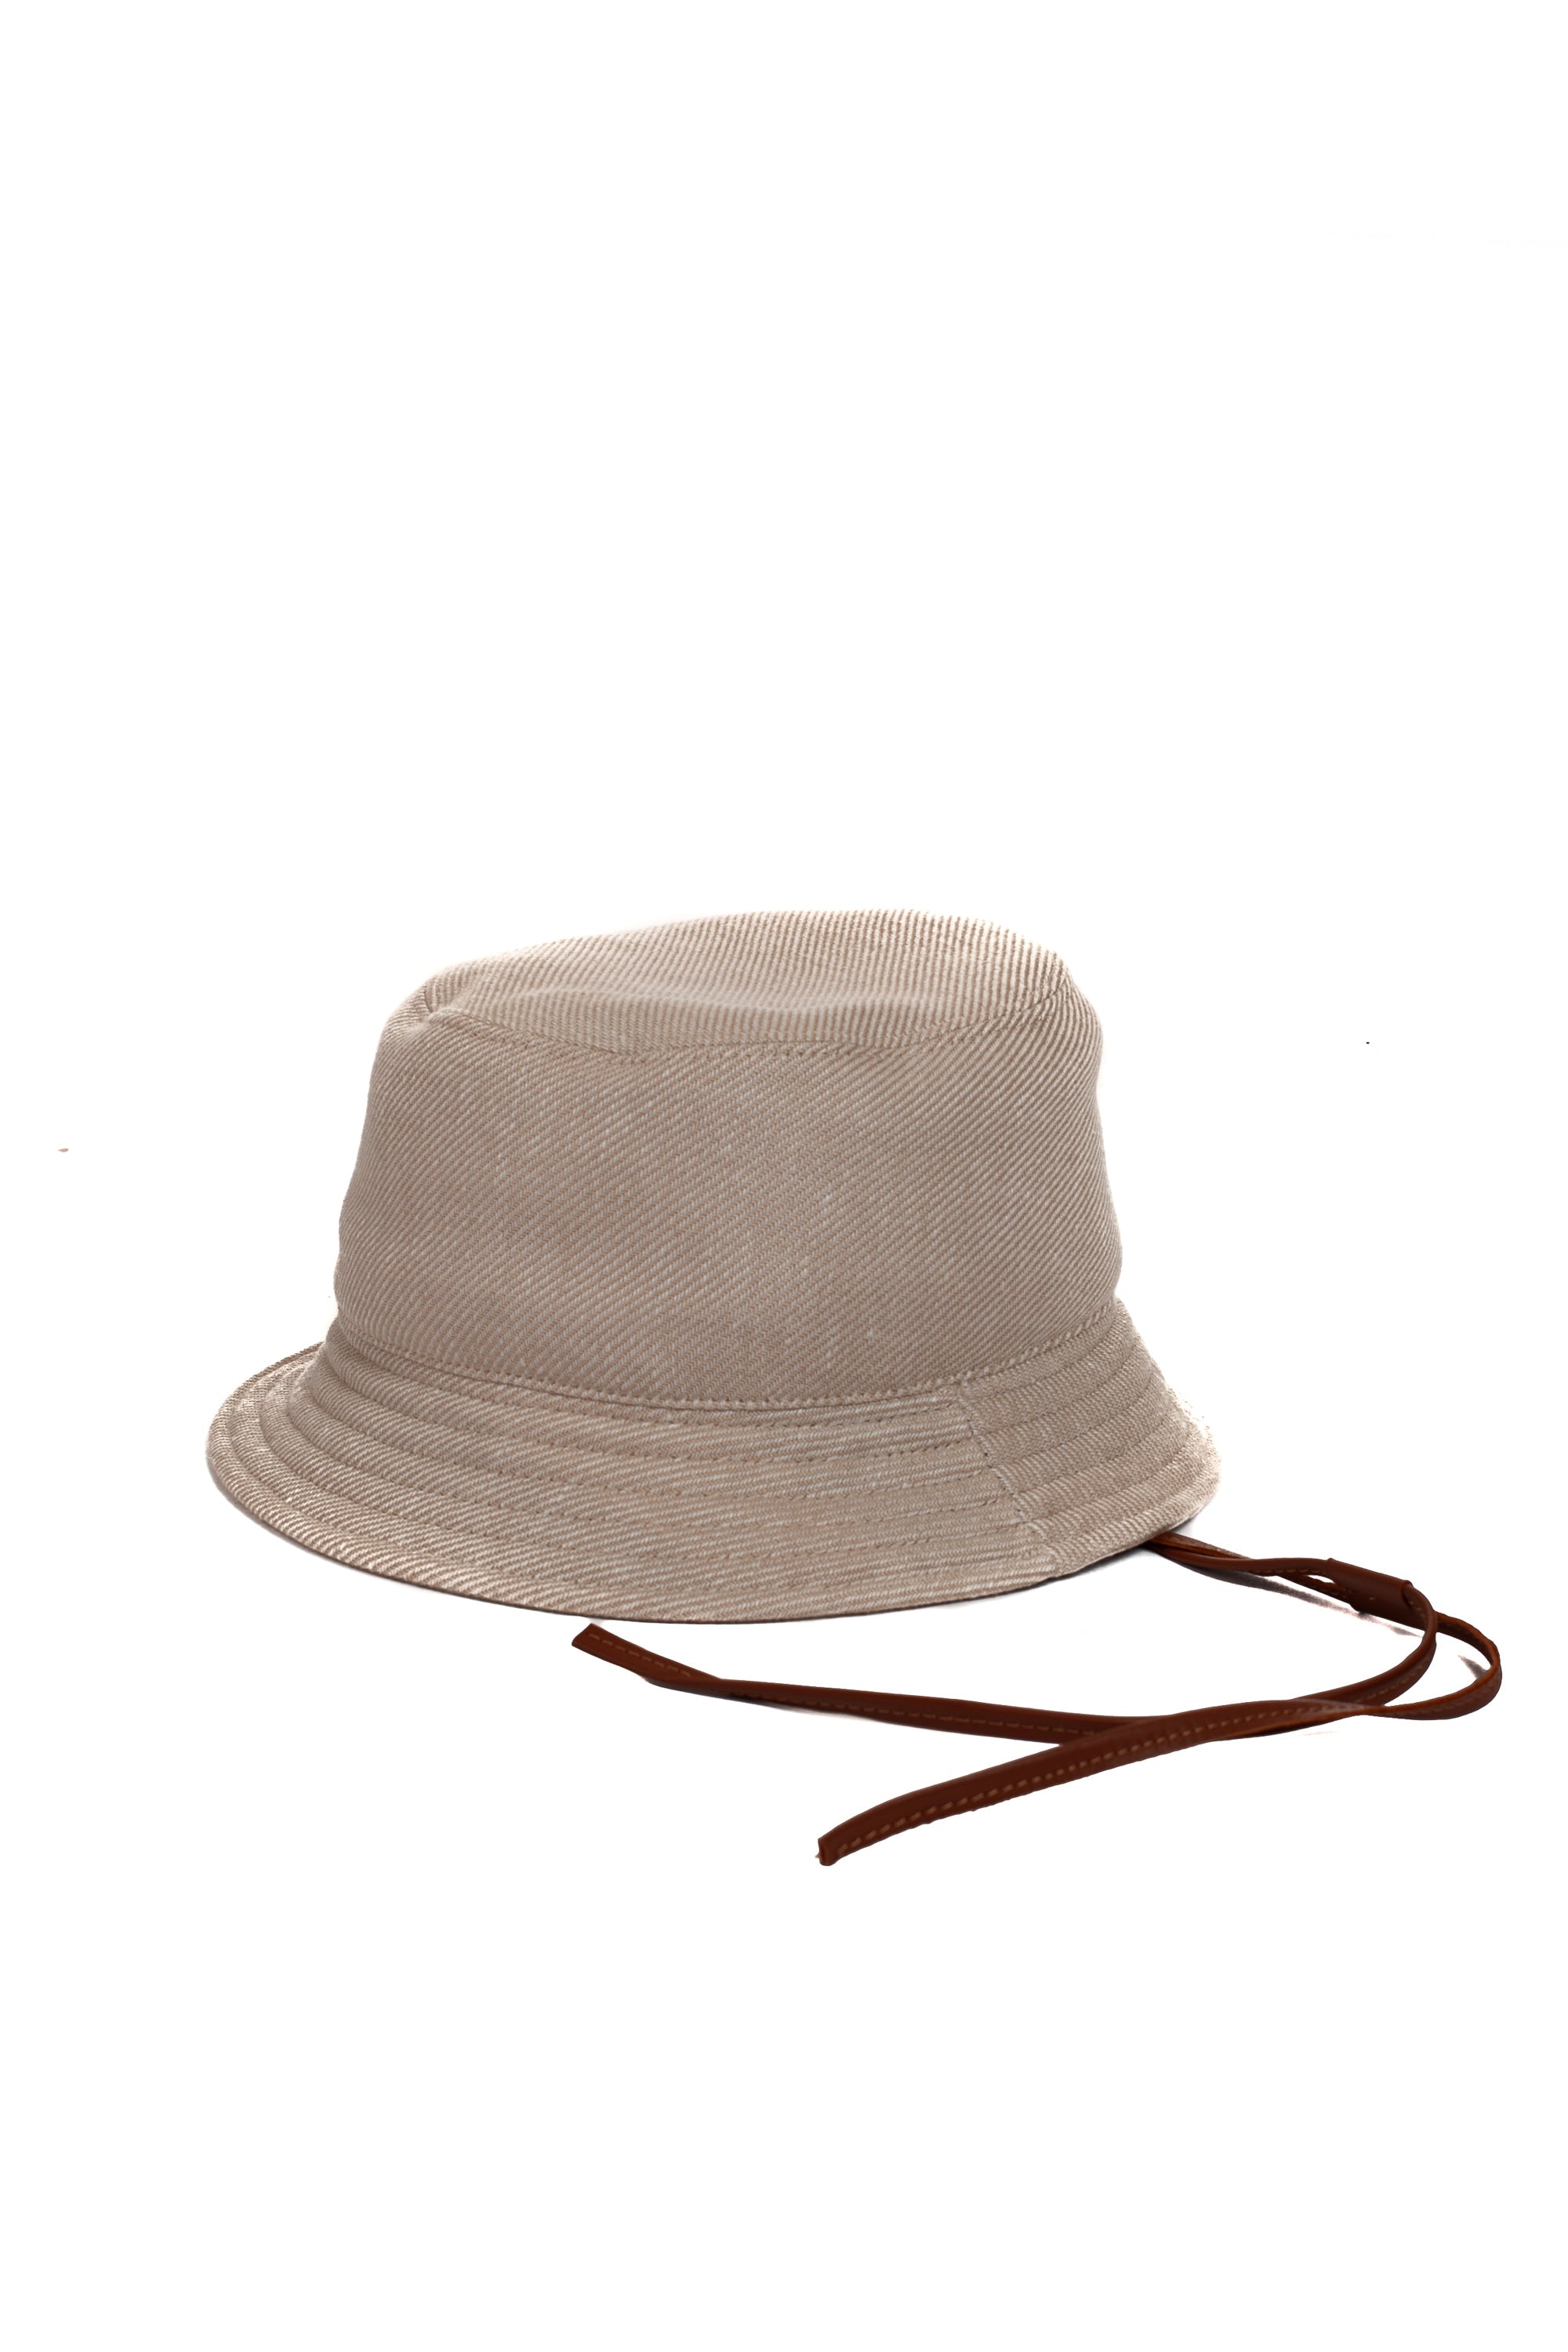 Cappello pescatore in lana-lino-seta